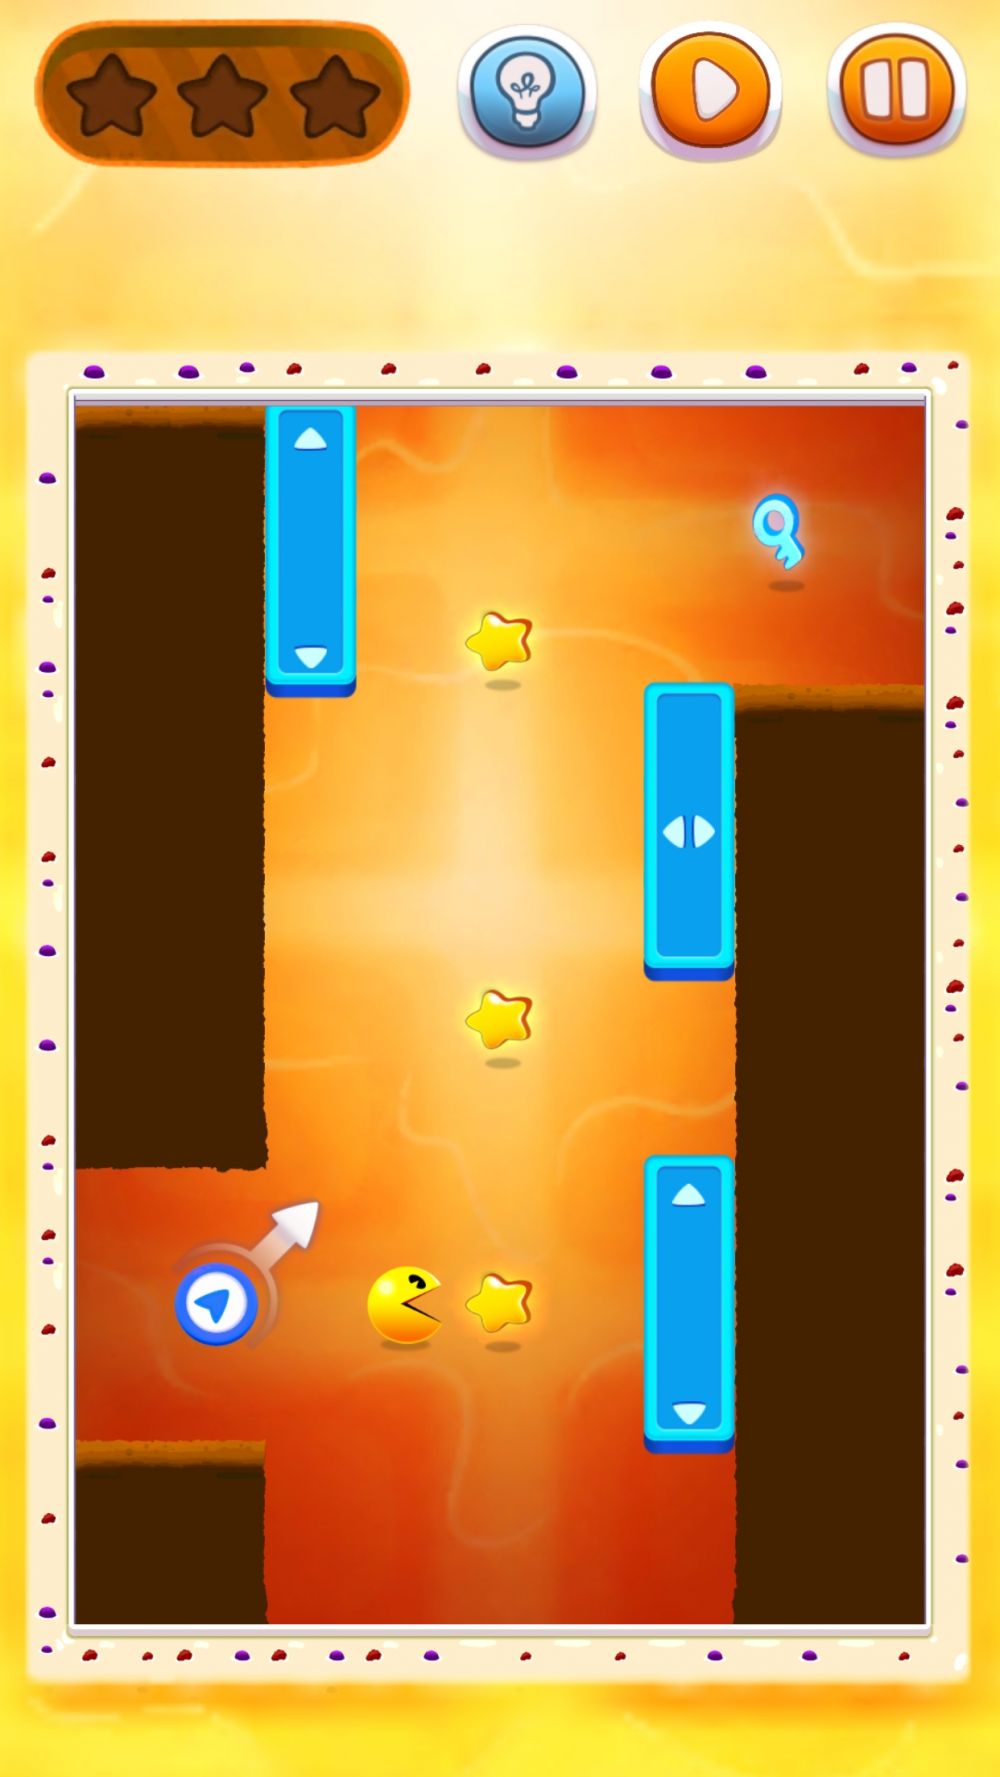 Jouez avec les éléments pour guider Pac Man vers la victoire